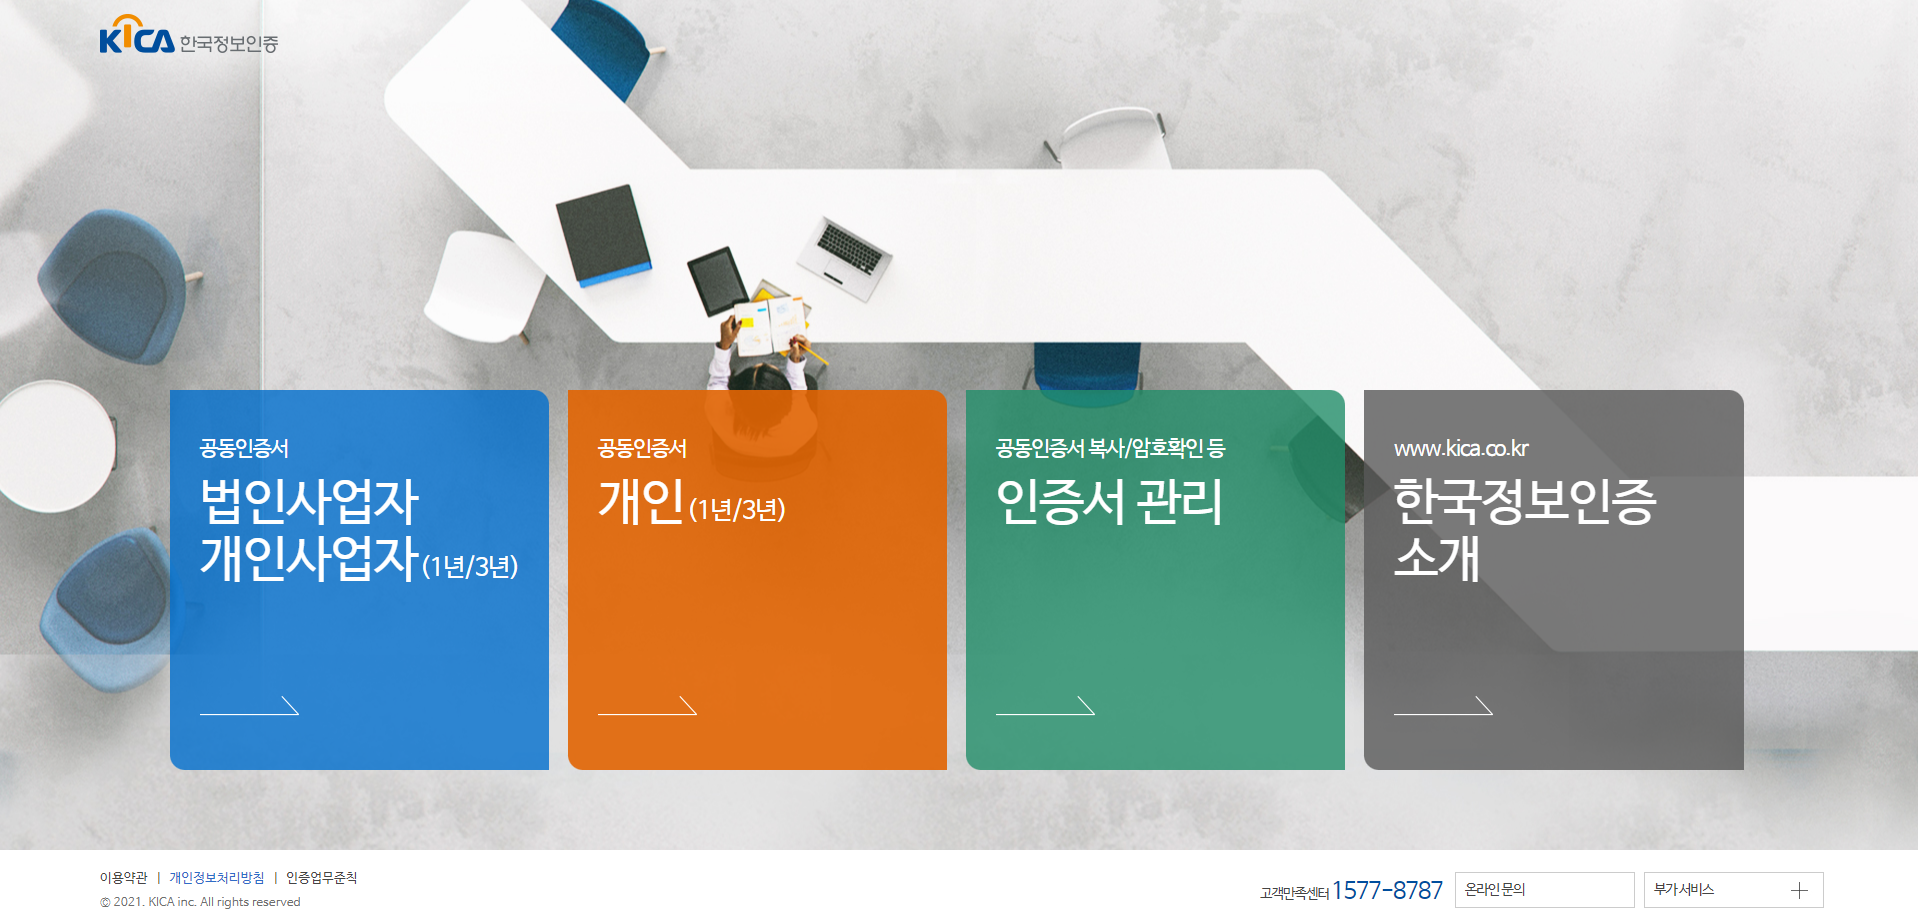 한국정보인증 SIGNGATE 서비스 스크릿샷